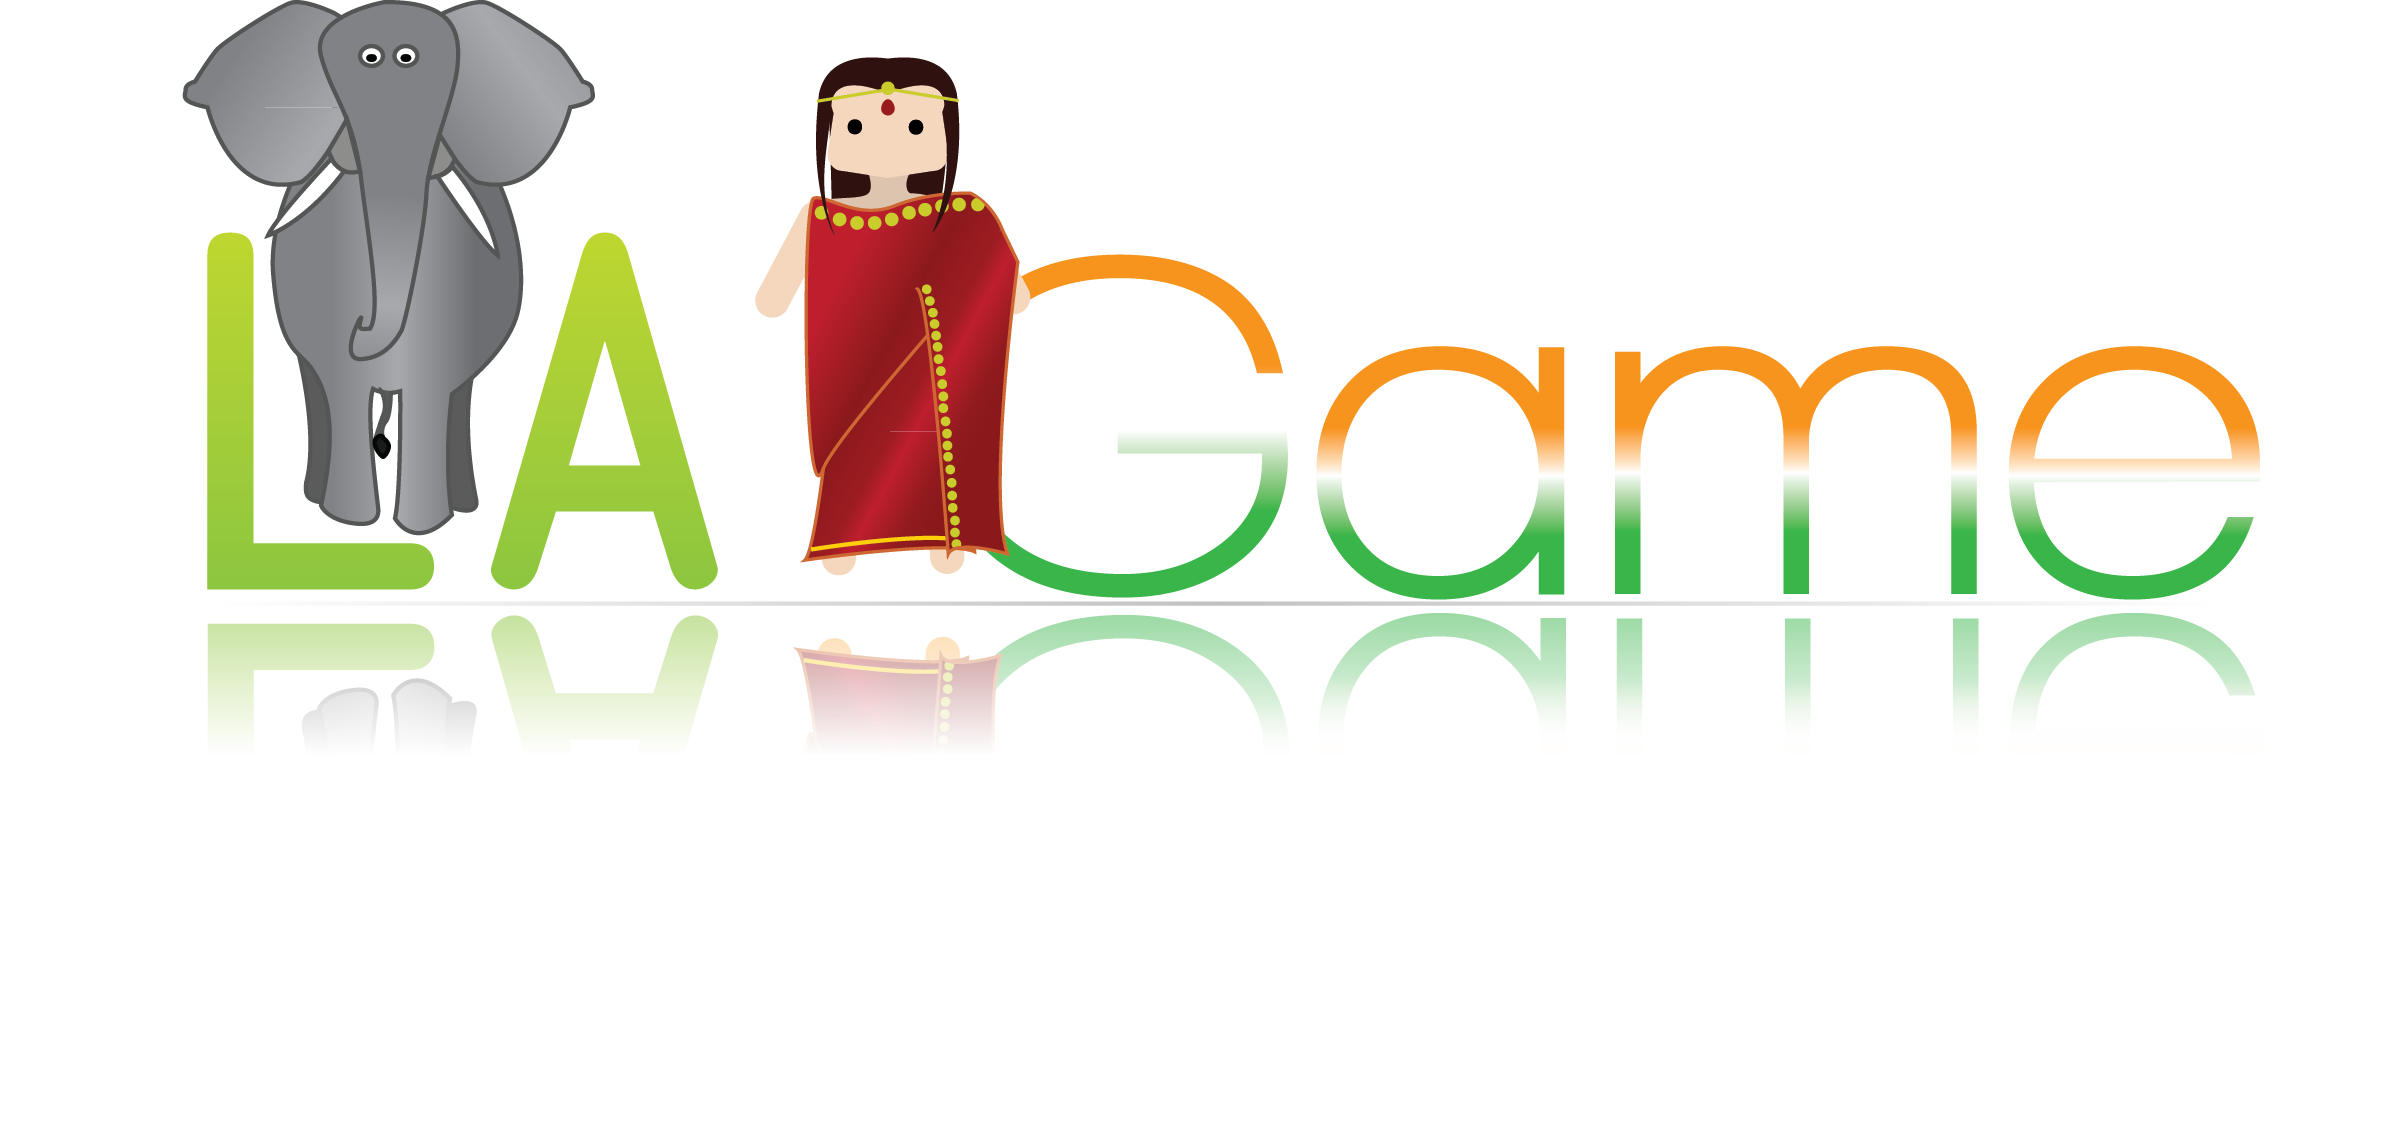 LA-Game India puppet design.